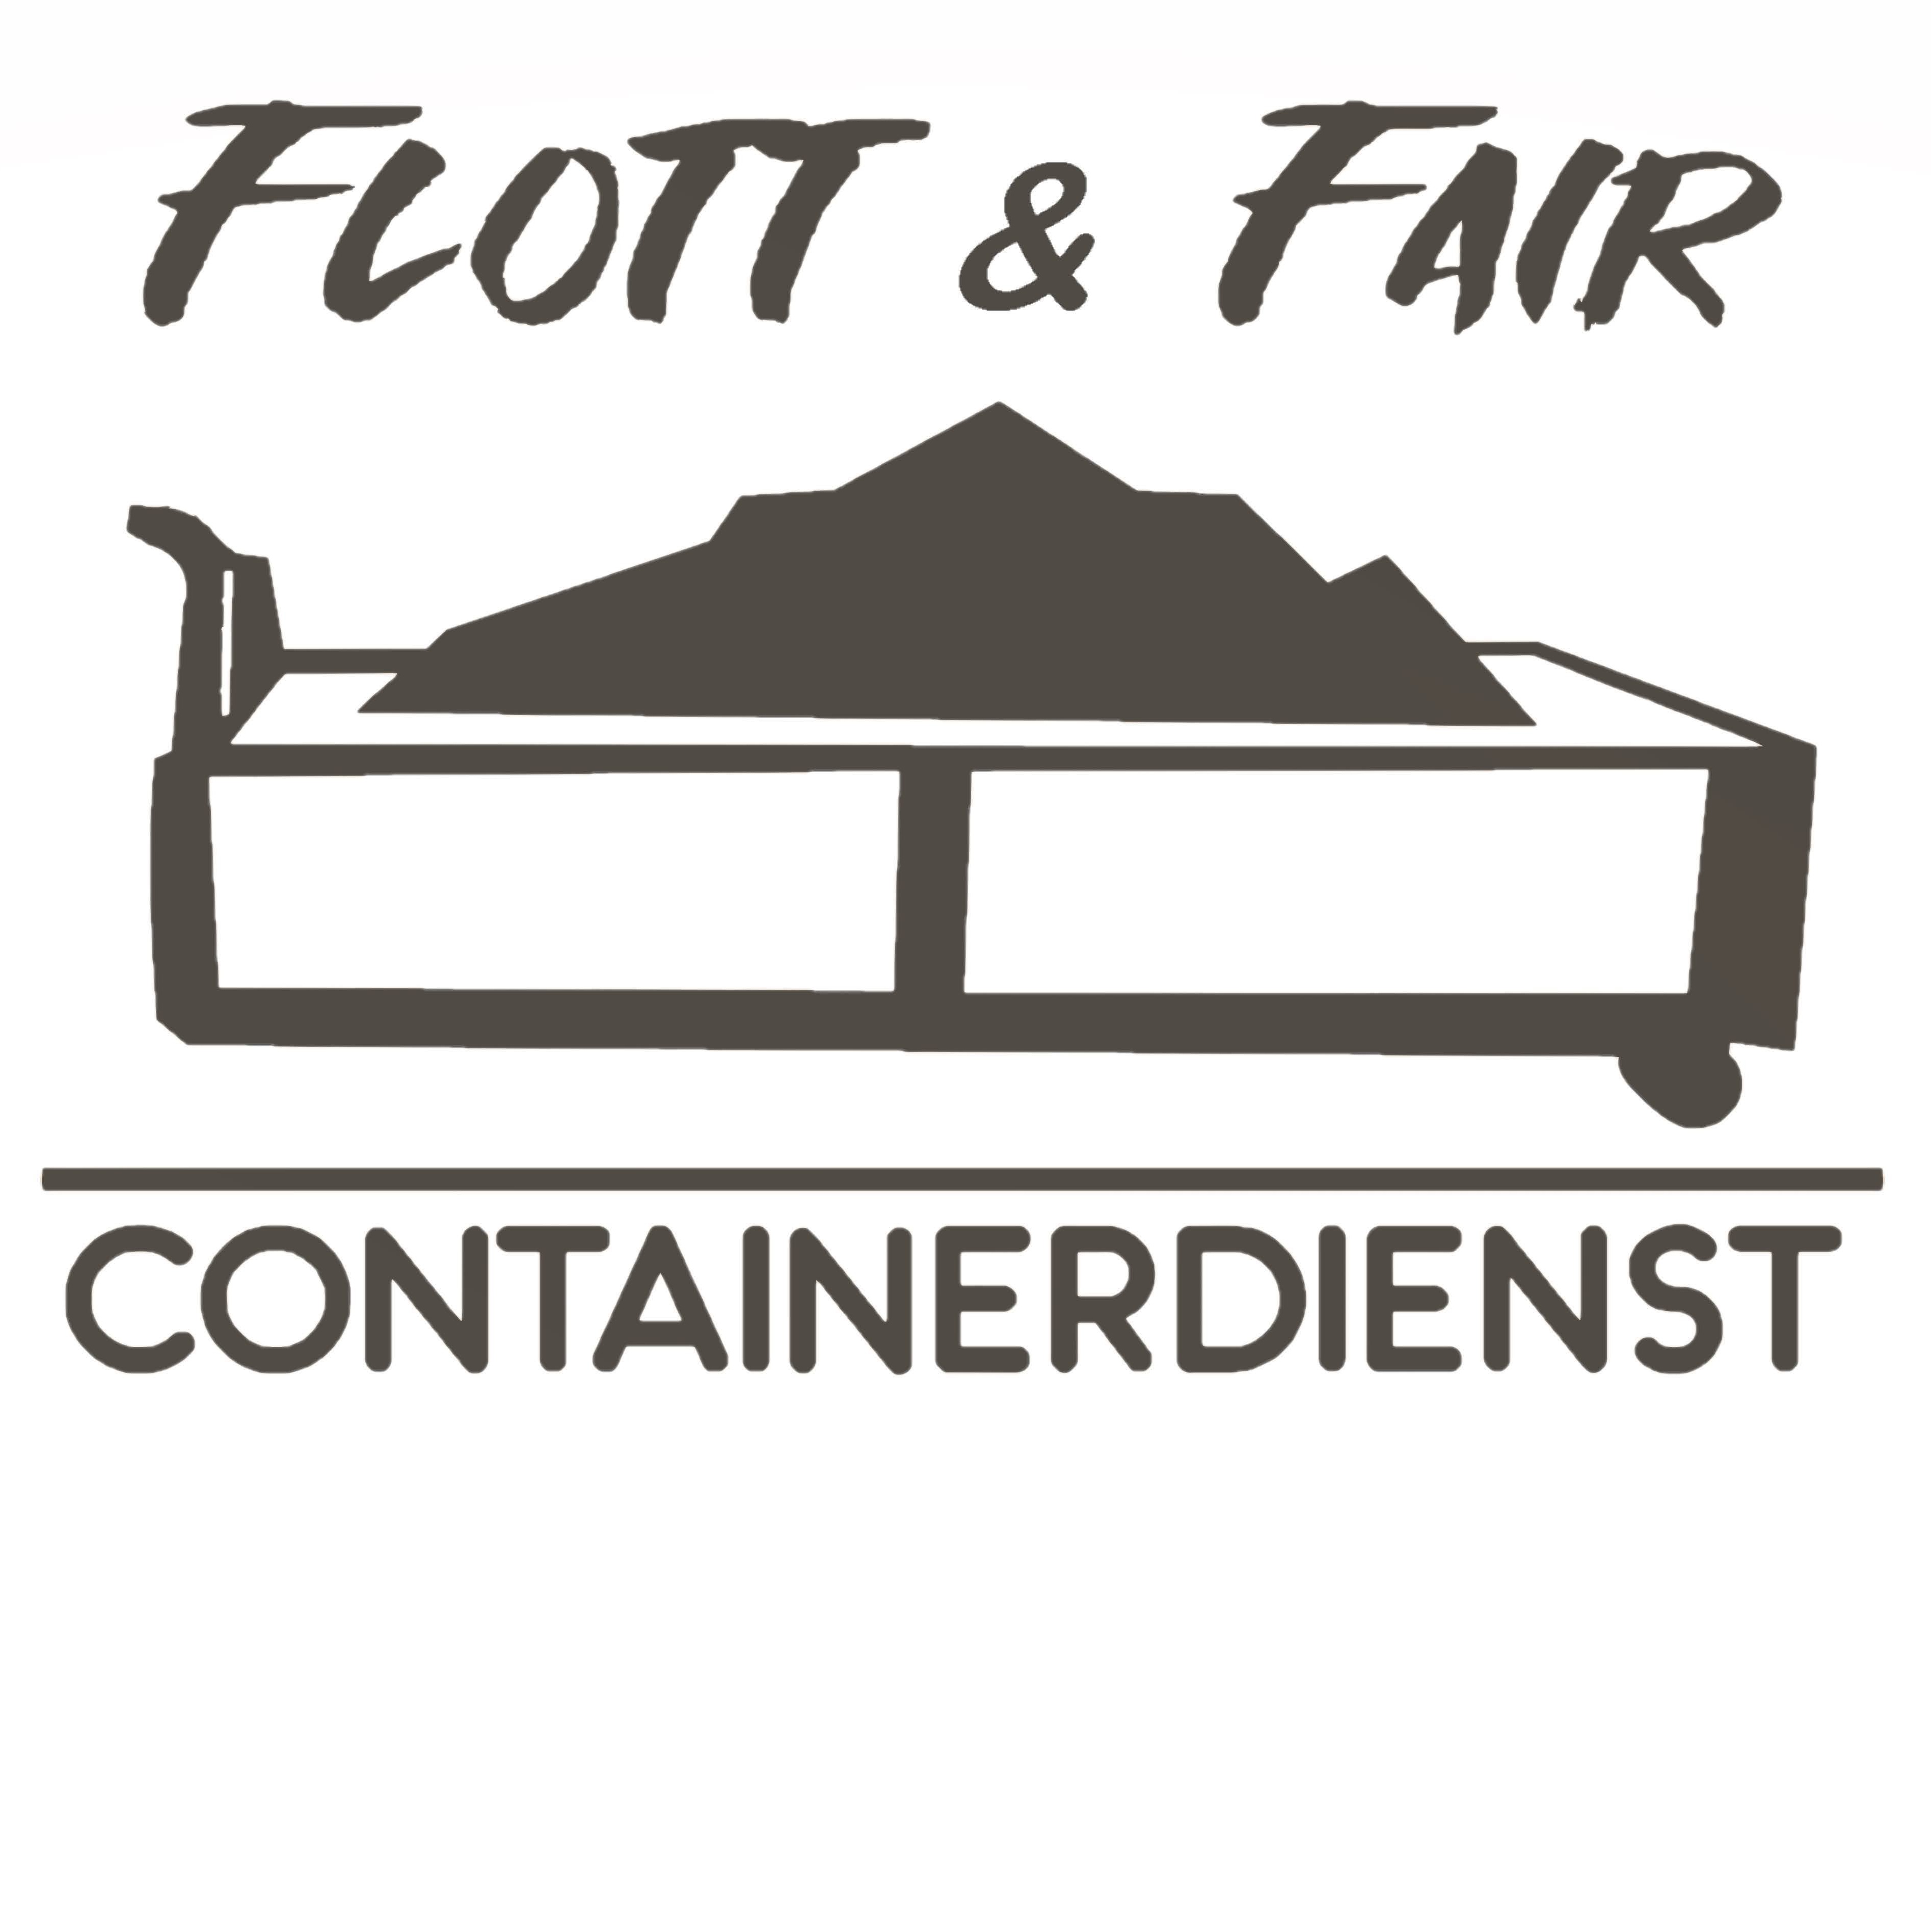 Containerdienst Flott & Fair Logo